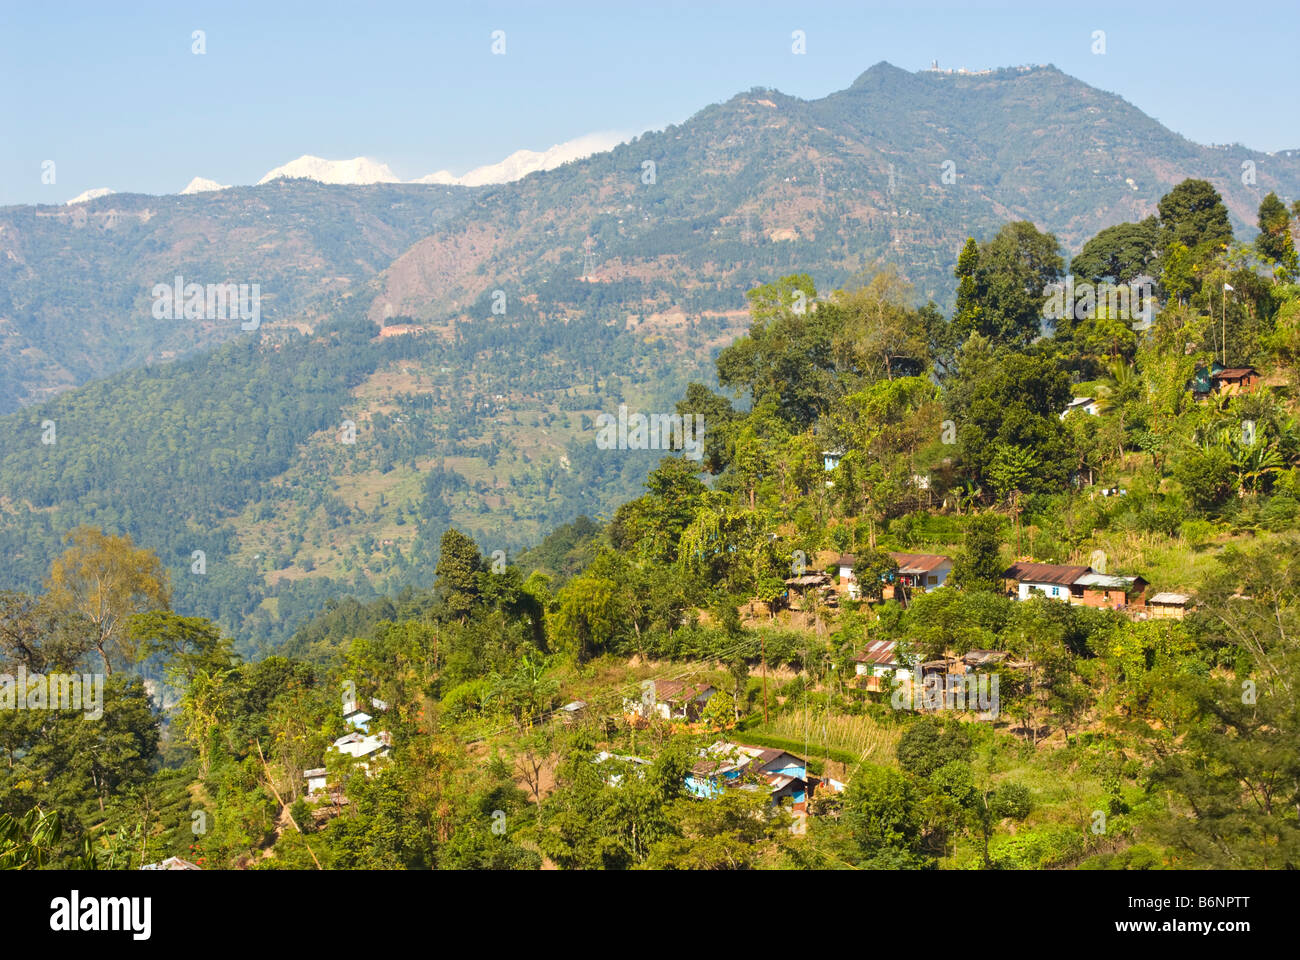 Glenburn Tea Estate, Darjeeling, India Stock Photo